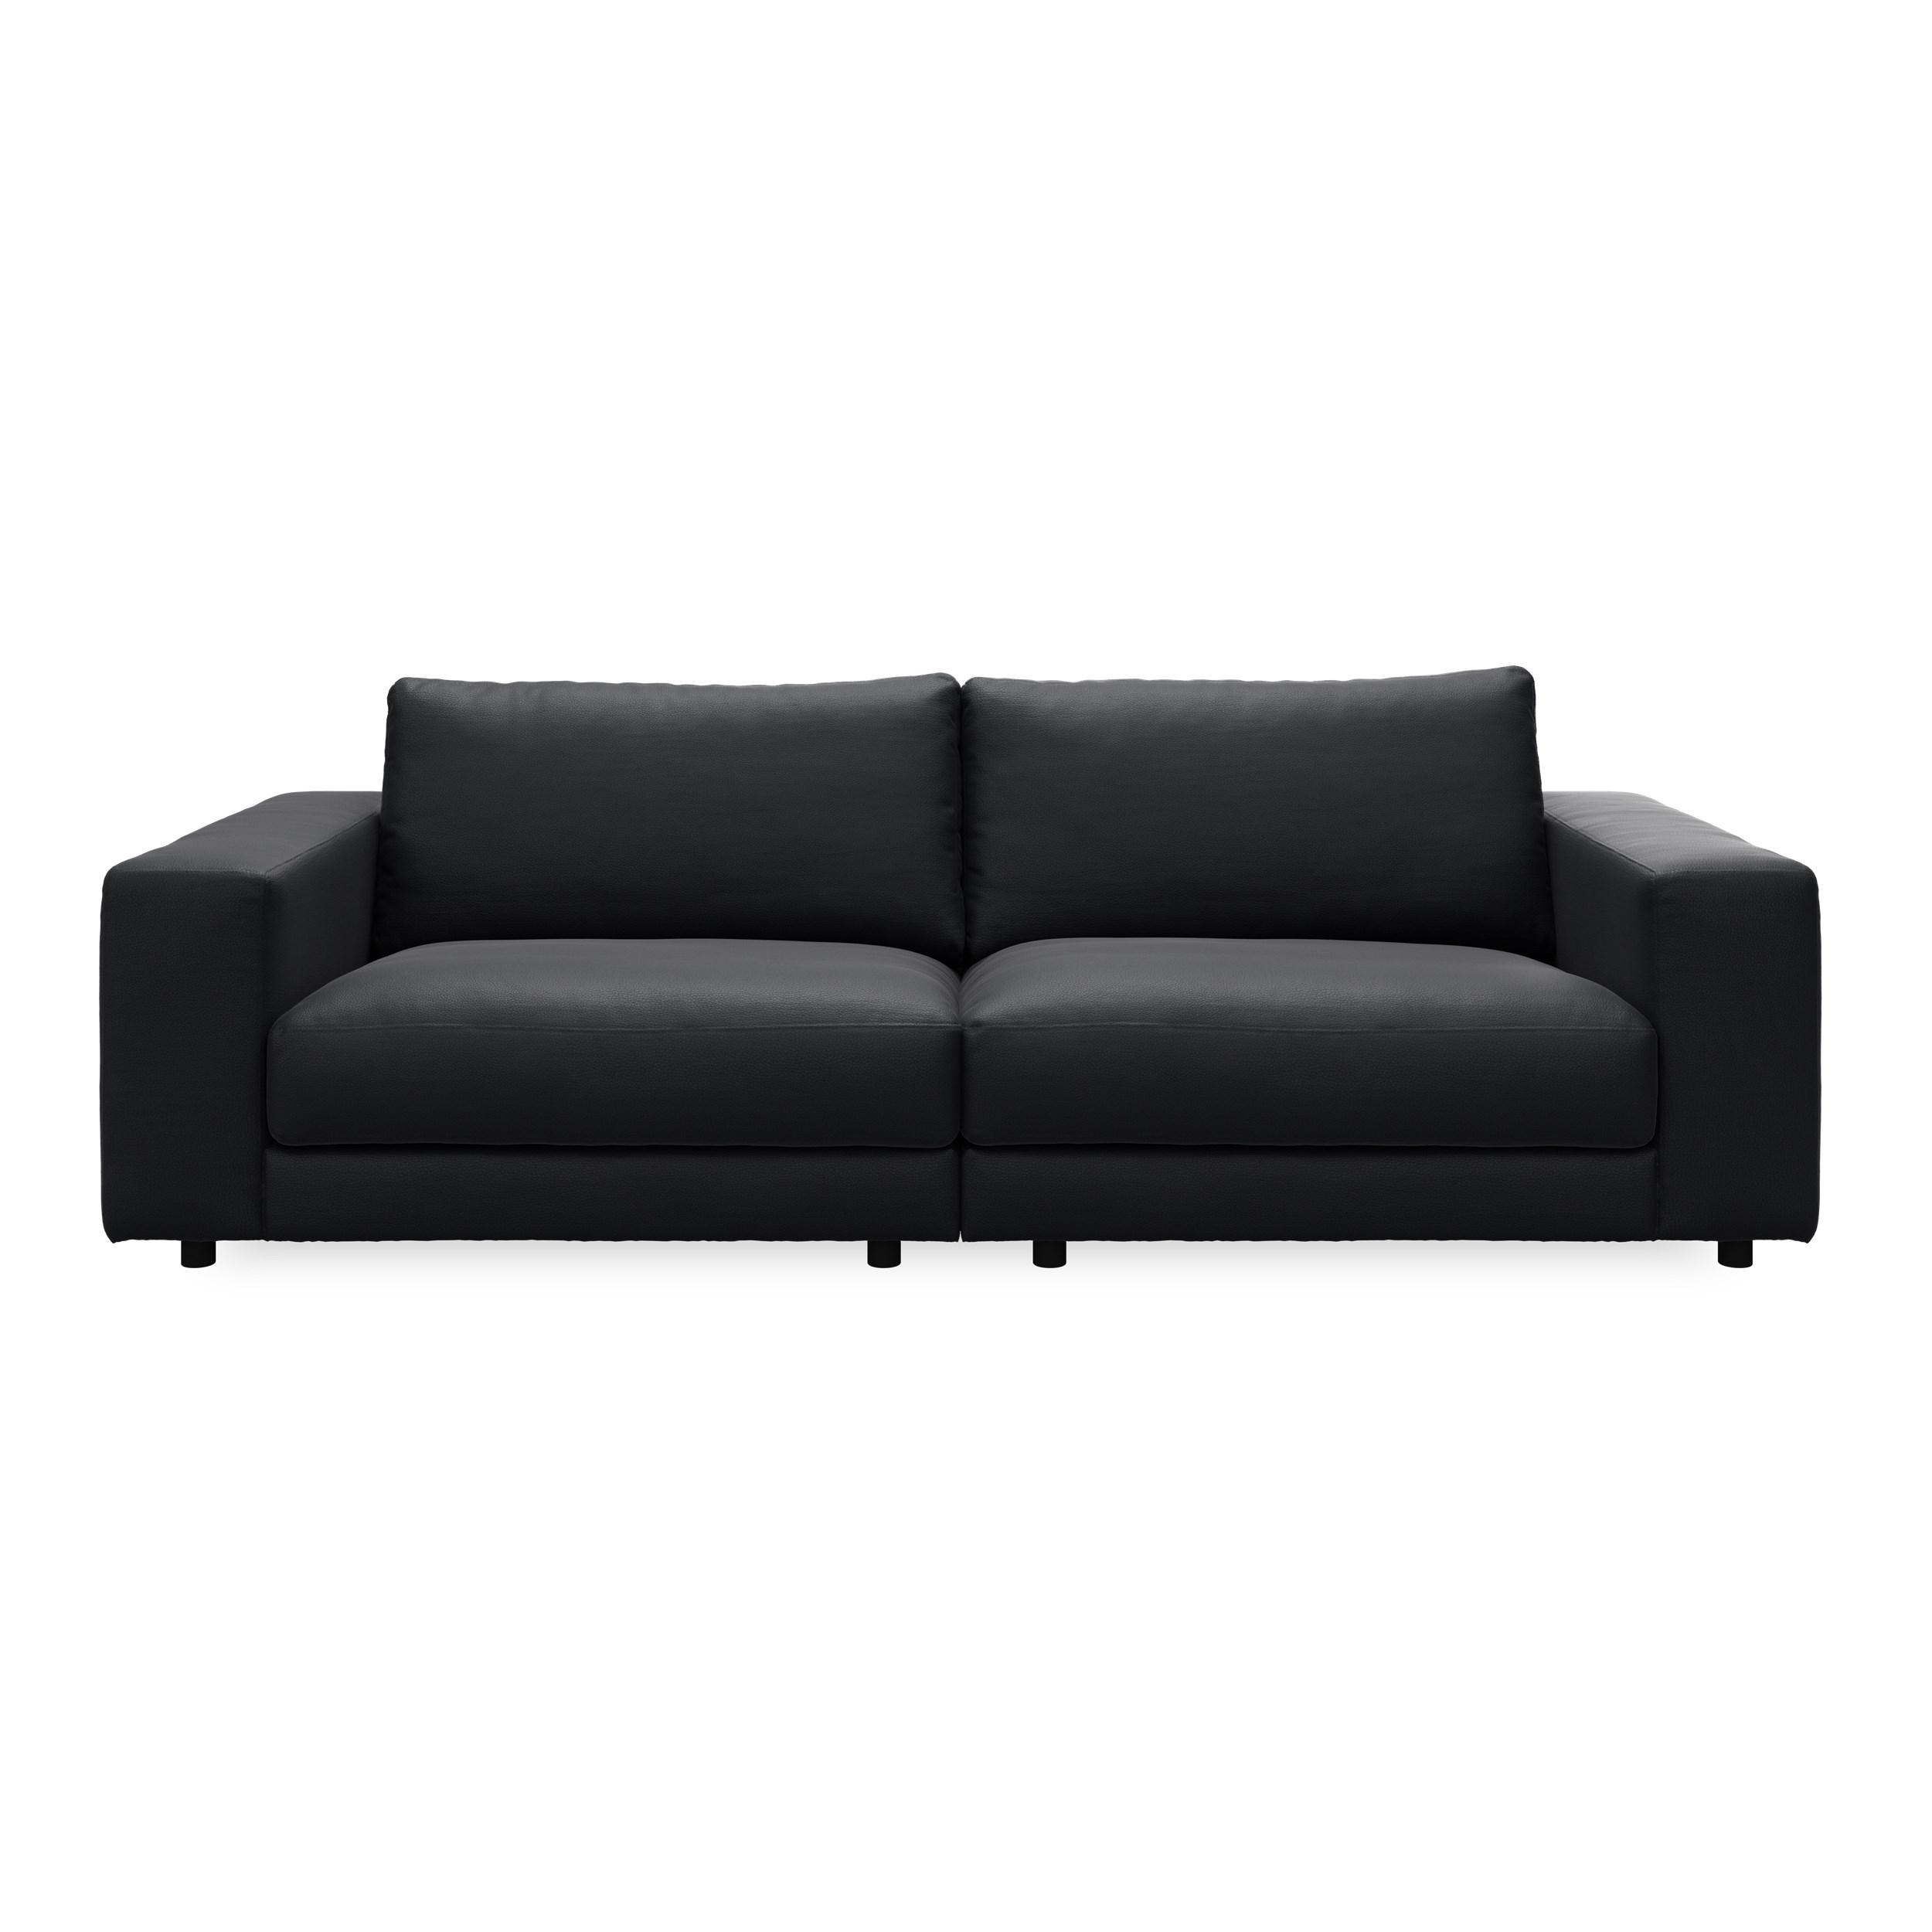 Bennent 3 pers Sofa - Life-Line Black læder, ben i sort plast og S:PURskum på sinusfjedre m.fiber/silikone mix R:Dun/skum mix